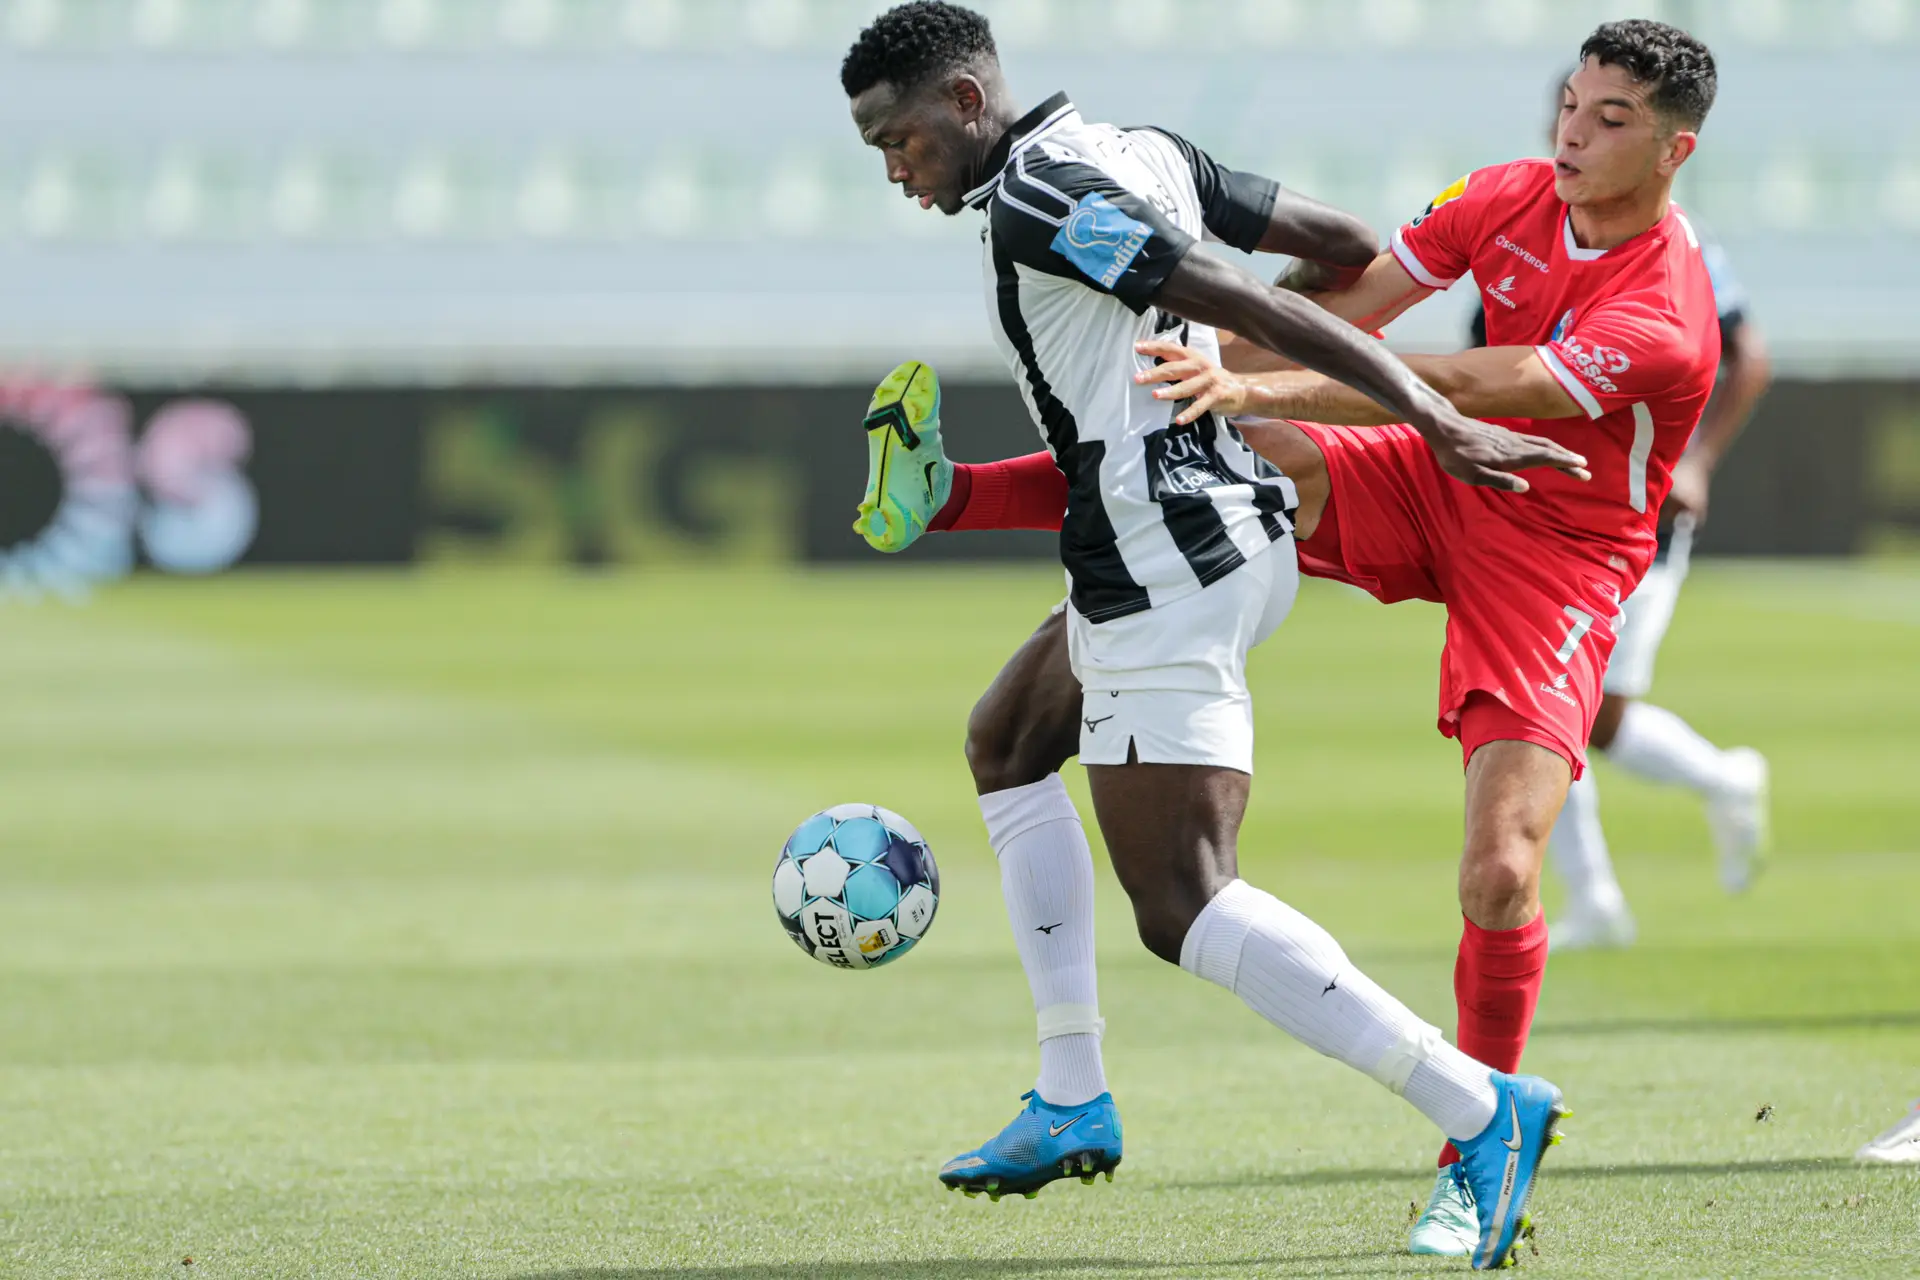 O jogador do Portimonense Fali Cande disputa a bola com o jogador do Gil Vicente Biel durante o jogo da 2º. jornada da Primeira Liga de futebol, disputado no estádio do Portimonense, em Portimão.